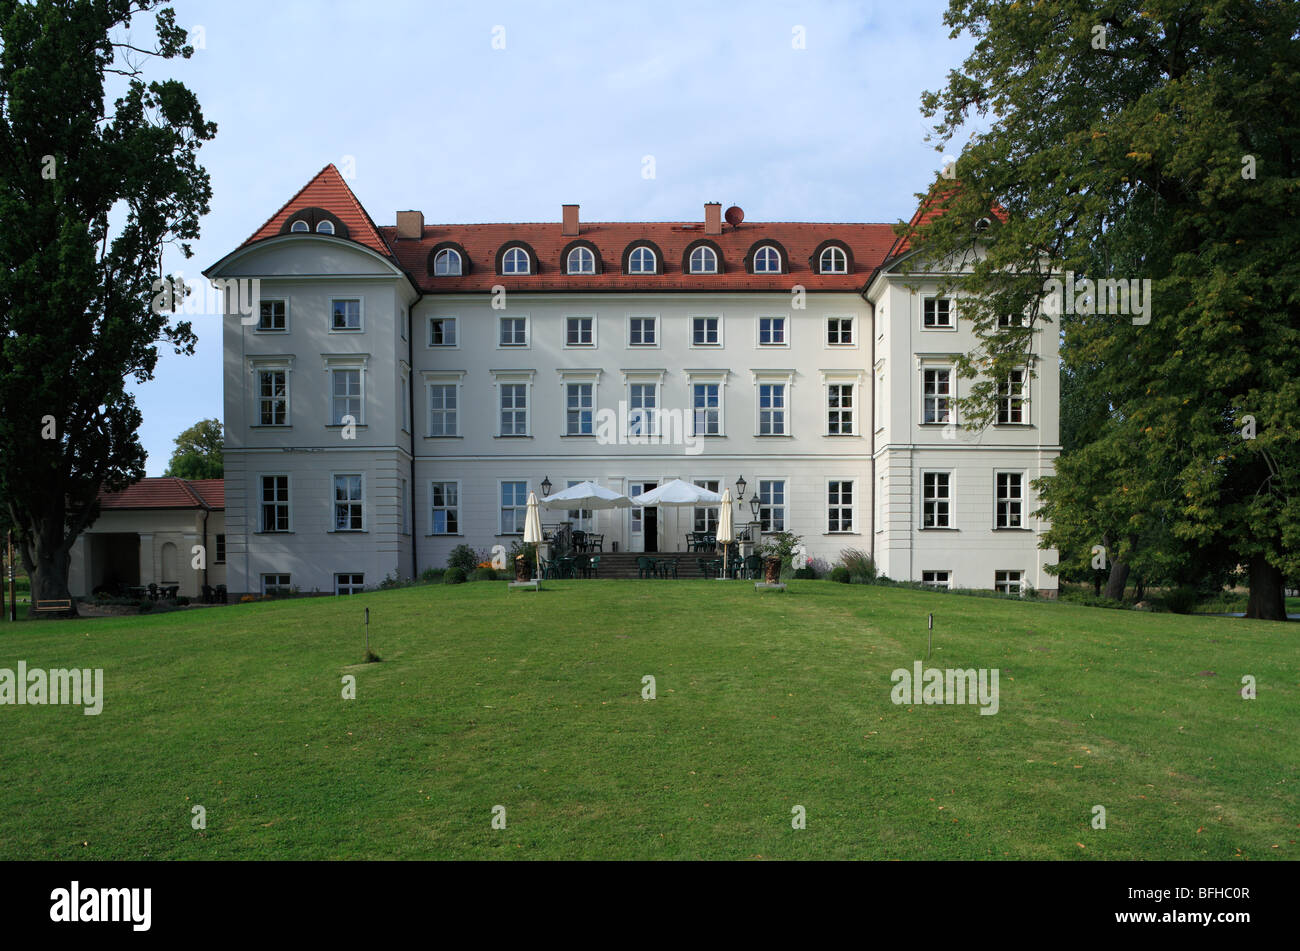 Klassizistisches Herrenhaus des Schlosses und Hotels Wedendorf in Nordwestmecklenburg, Mecklenburg-Vorpommern Stock Photo